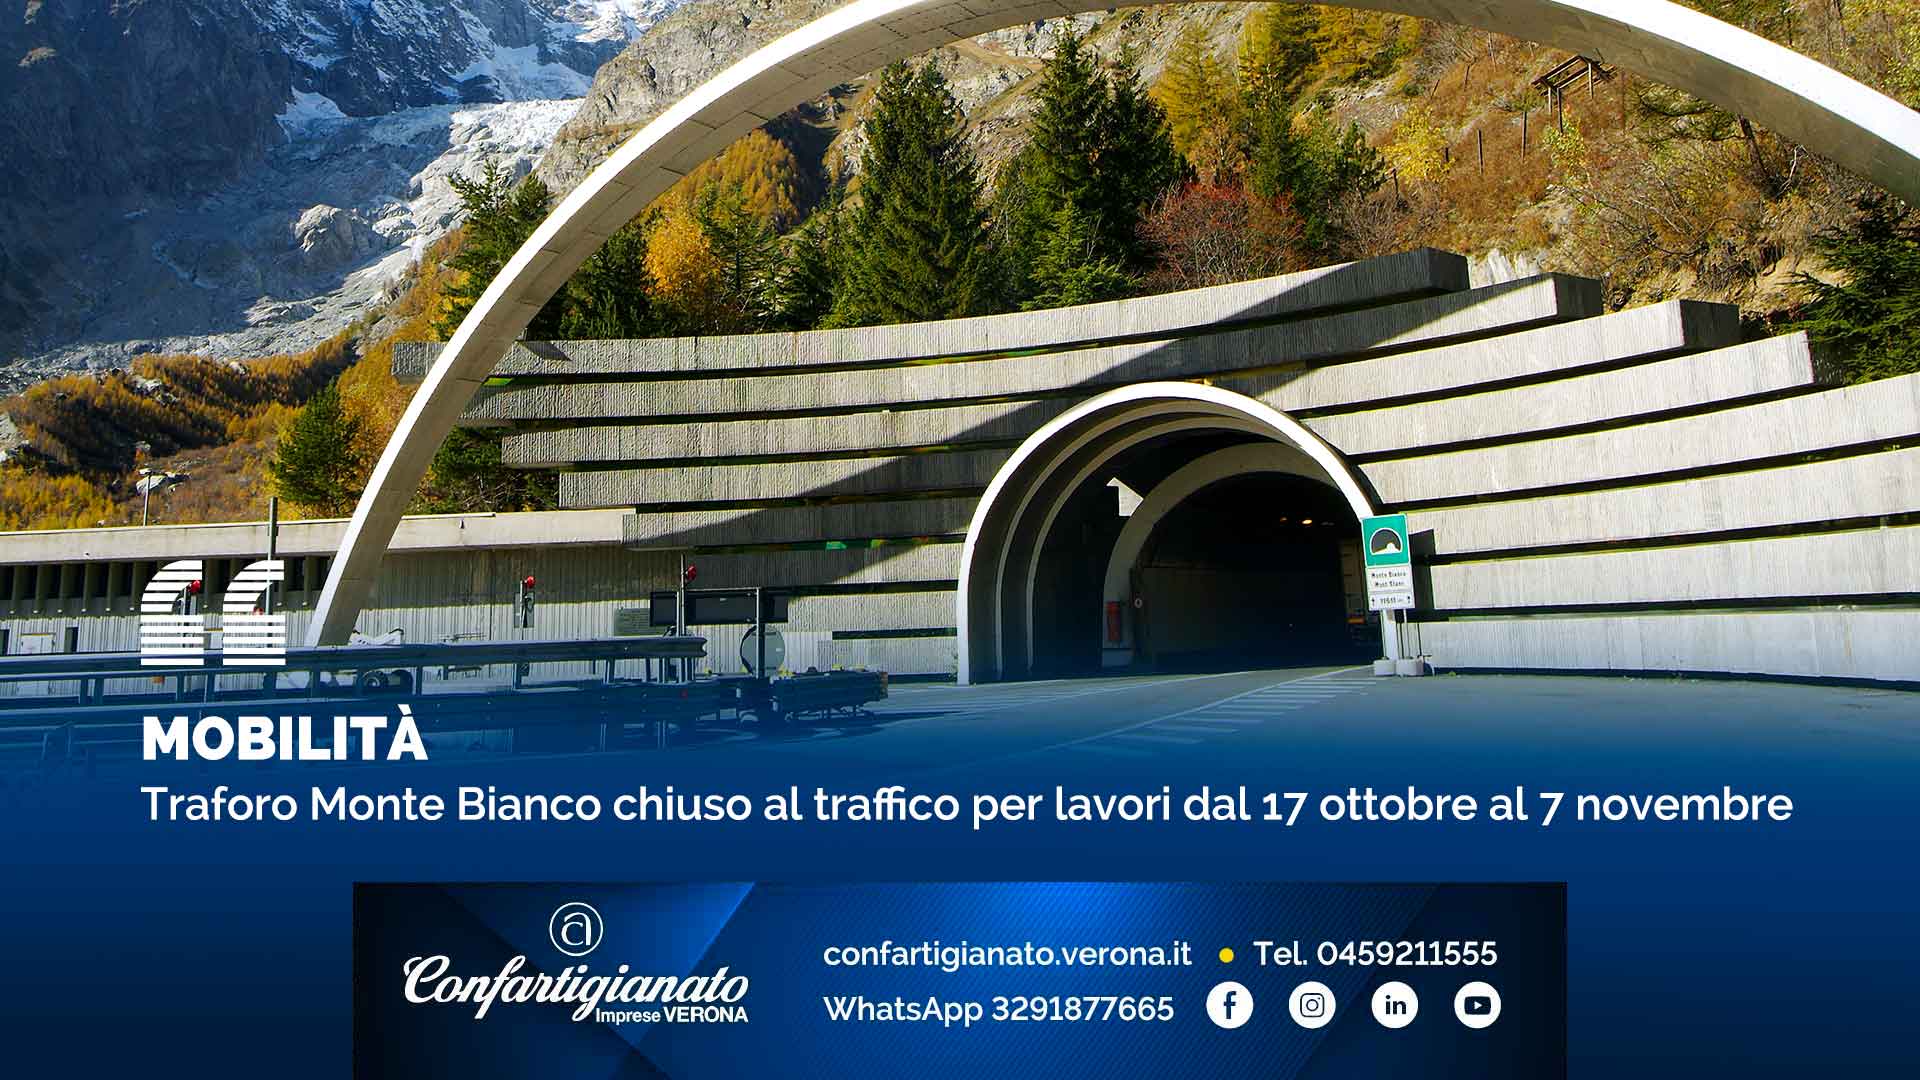 MOBILITA' – Traforo Monte Bianco chiuso al traffico per lavori dal 17 ottobre al 7 novembre